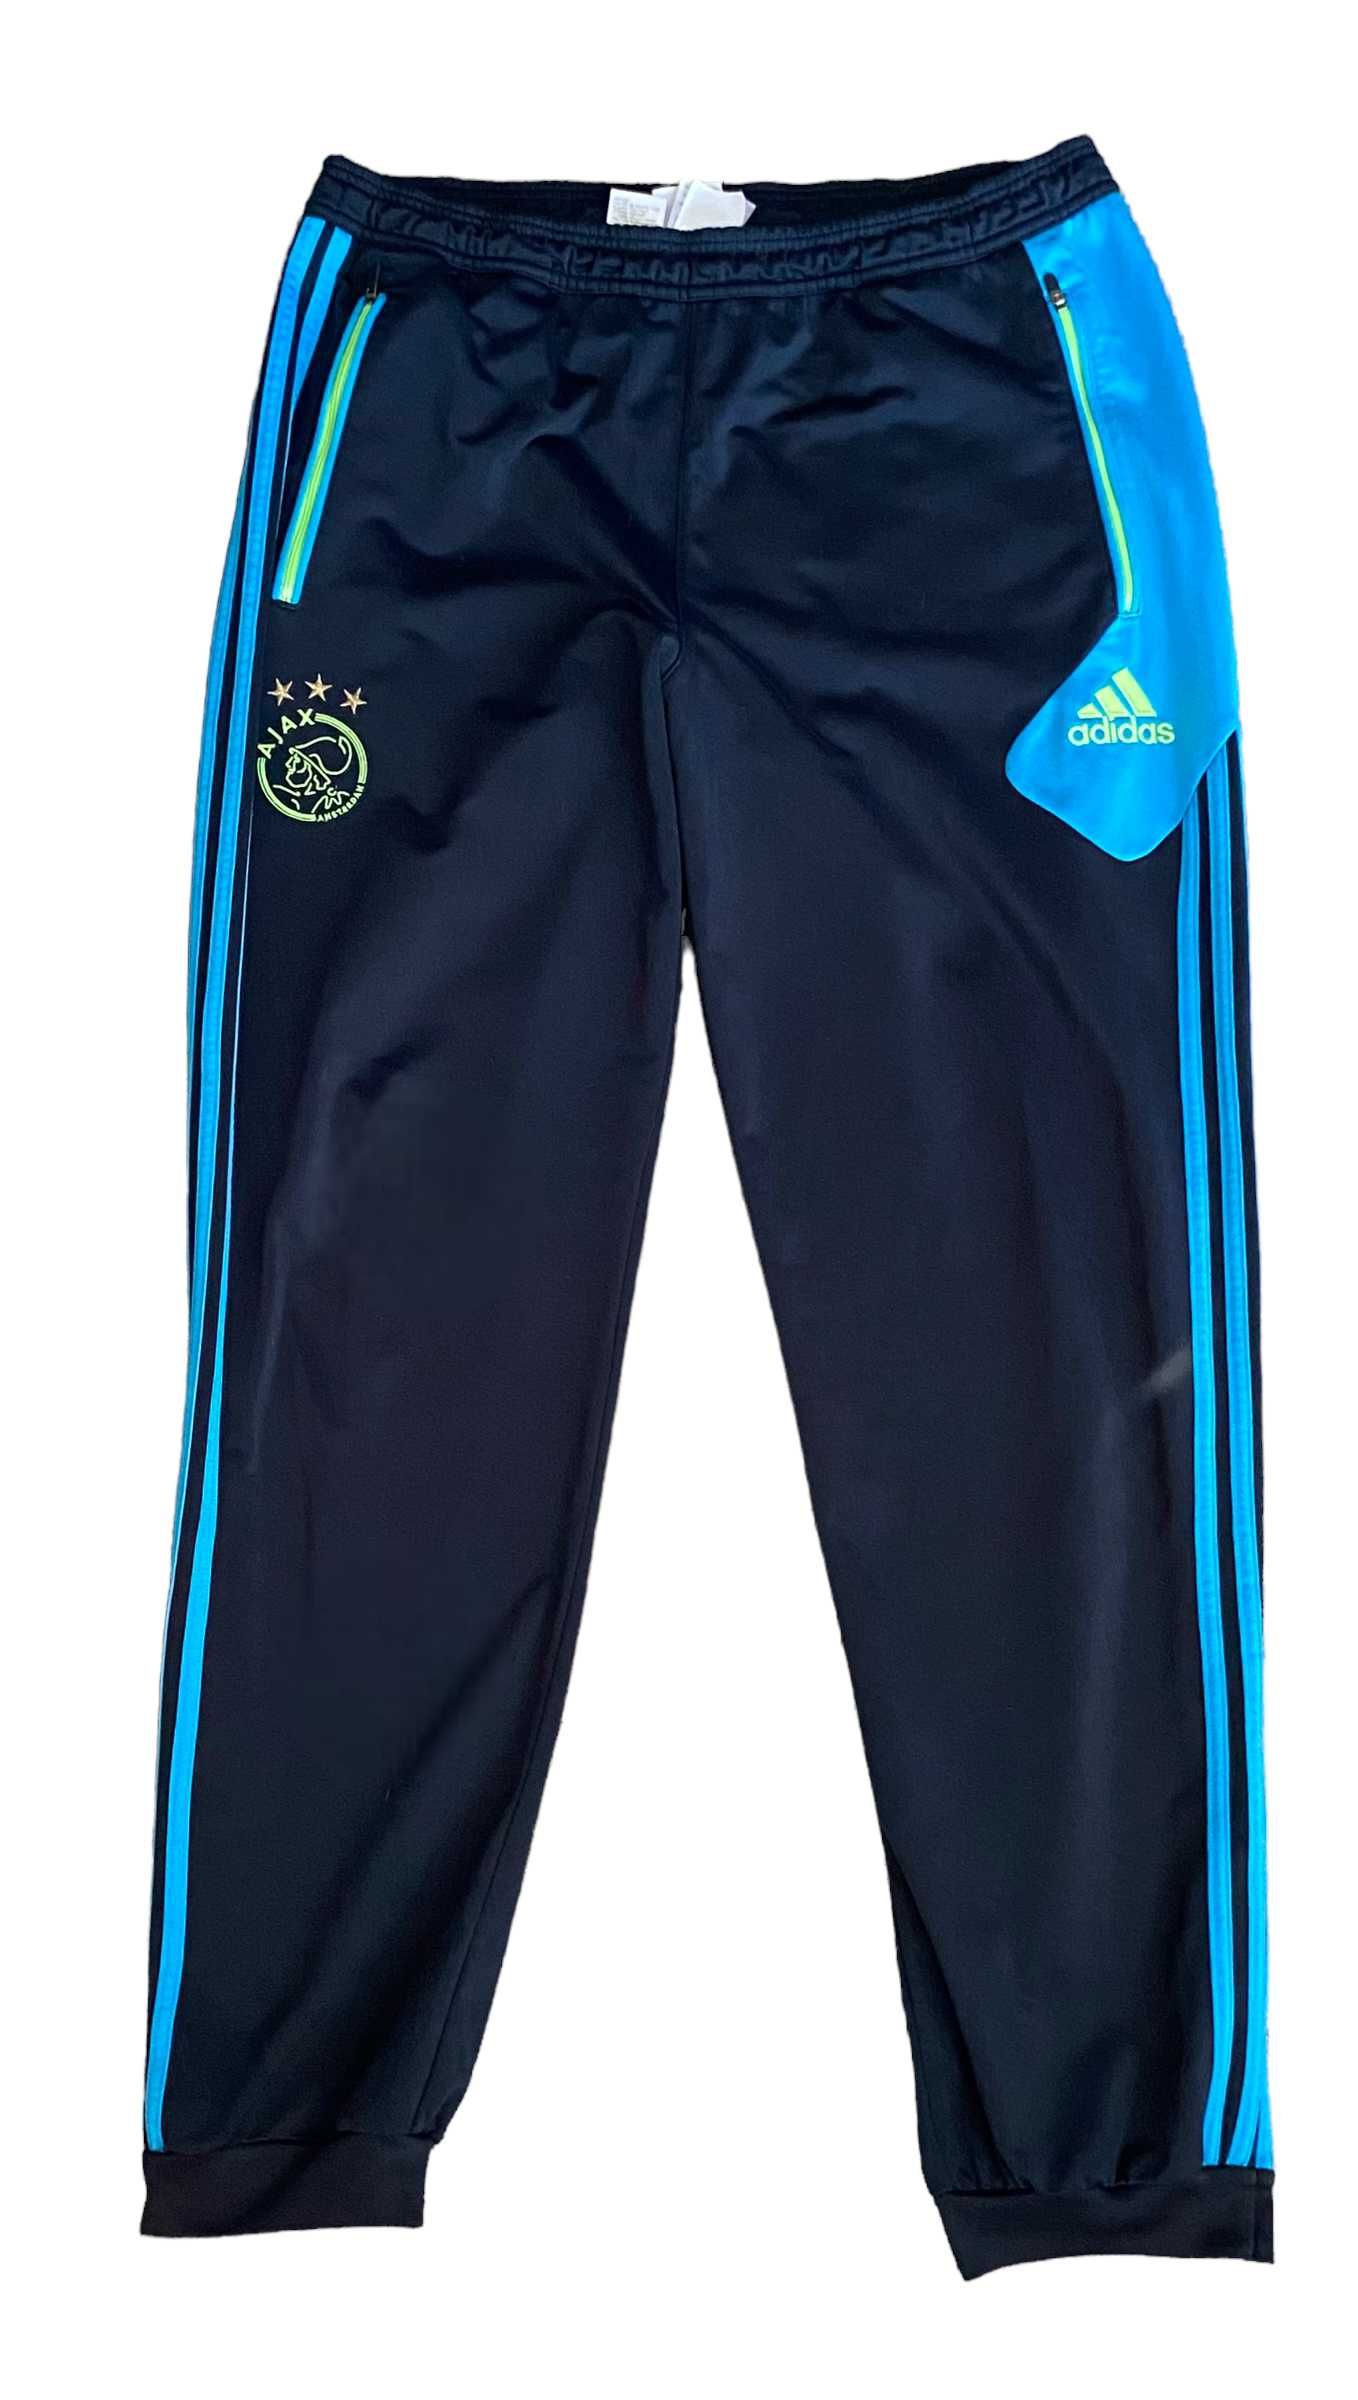 Adidas Ajax Amsterdam spodnie dresowe, rozmiar L, stan bardzo dobry